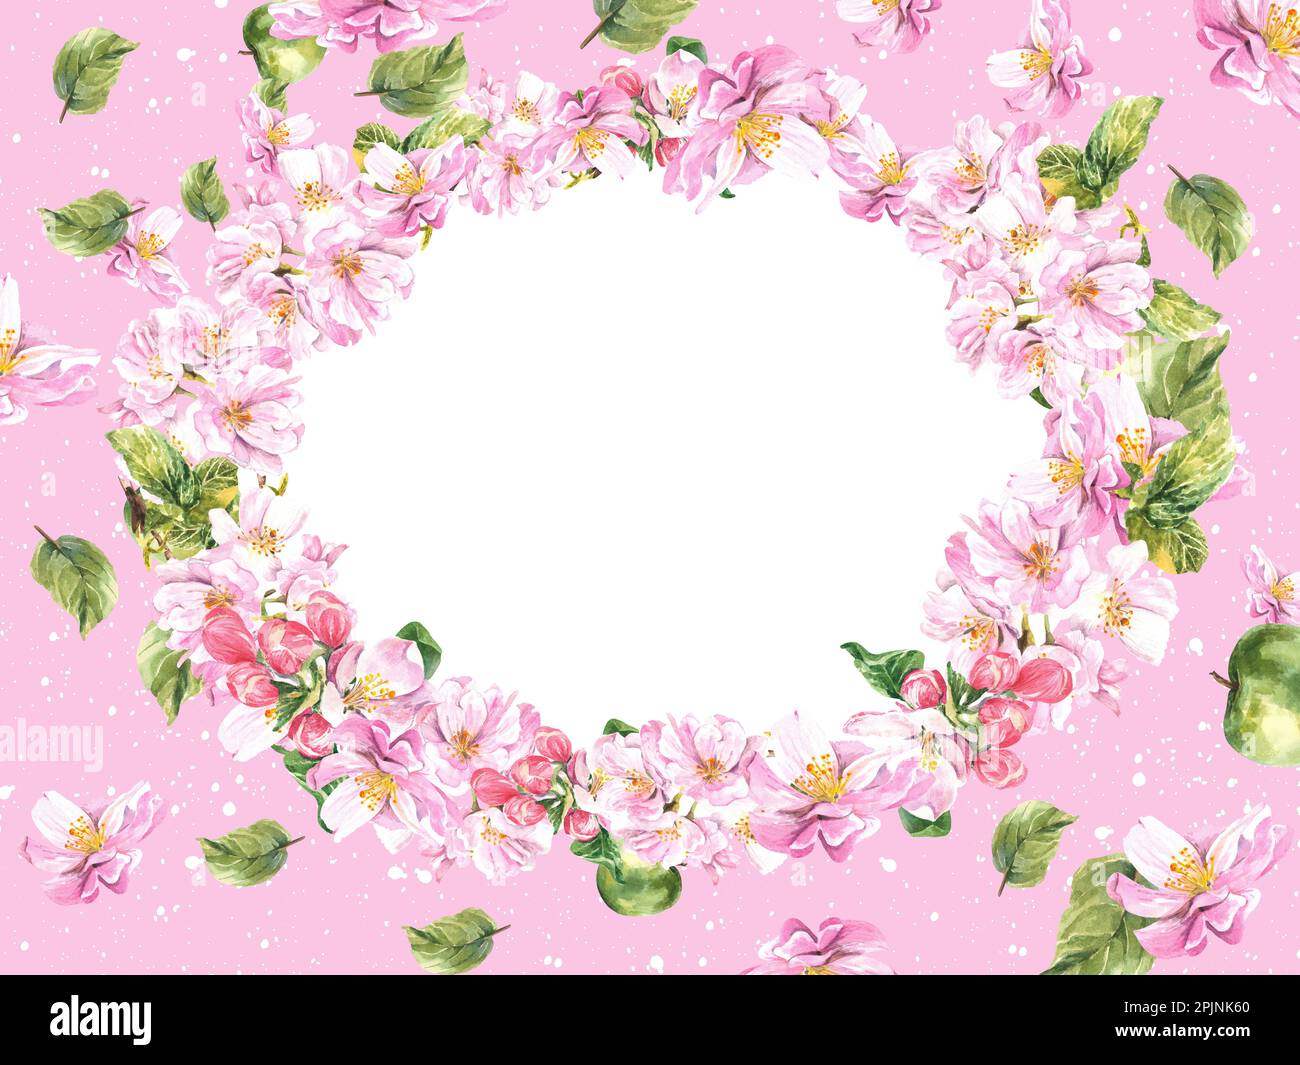 Composizione ovale di un albero di mela fiorito su sfondo rosa. Illustrazione di acquerello brillante e succoso Foto Stock